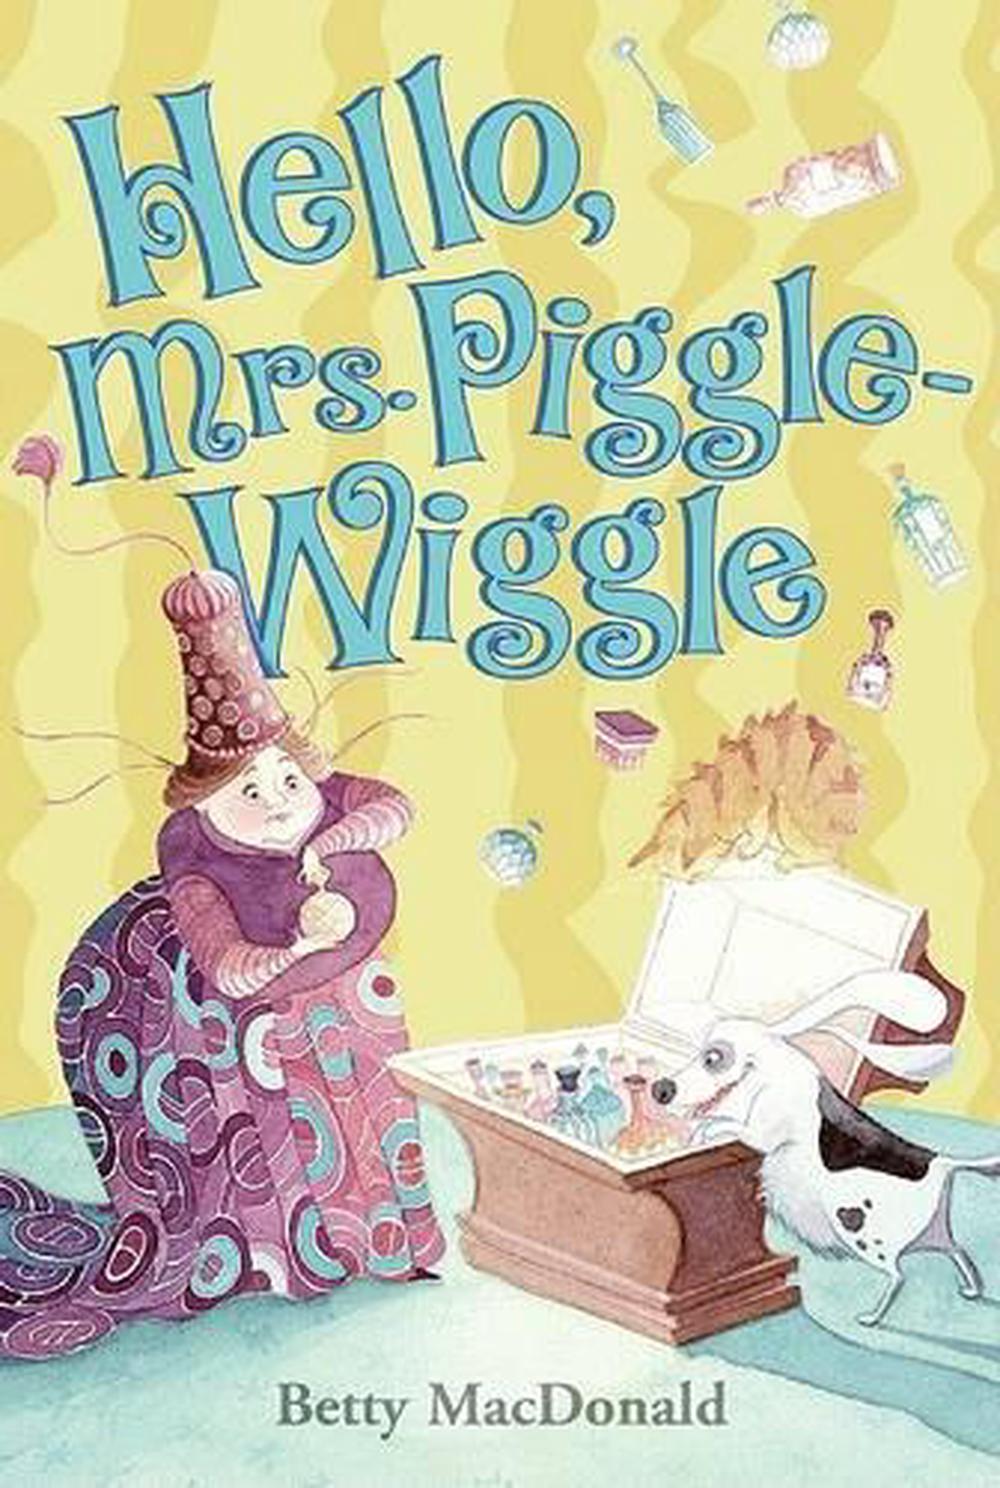 mrs piggle wiggle by betty macdonald